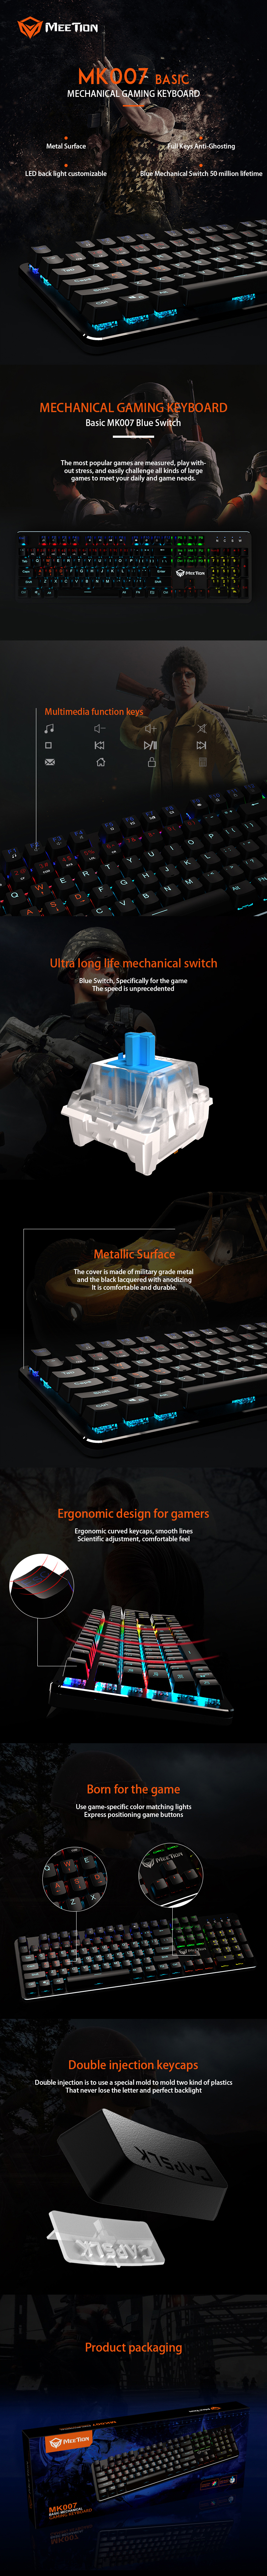 Meetion bulk purchase ergonomic gaming keyboard retailer